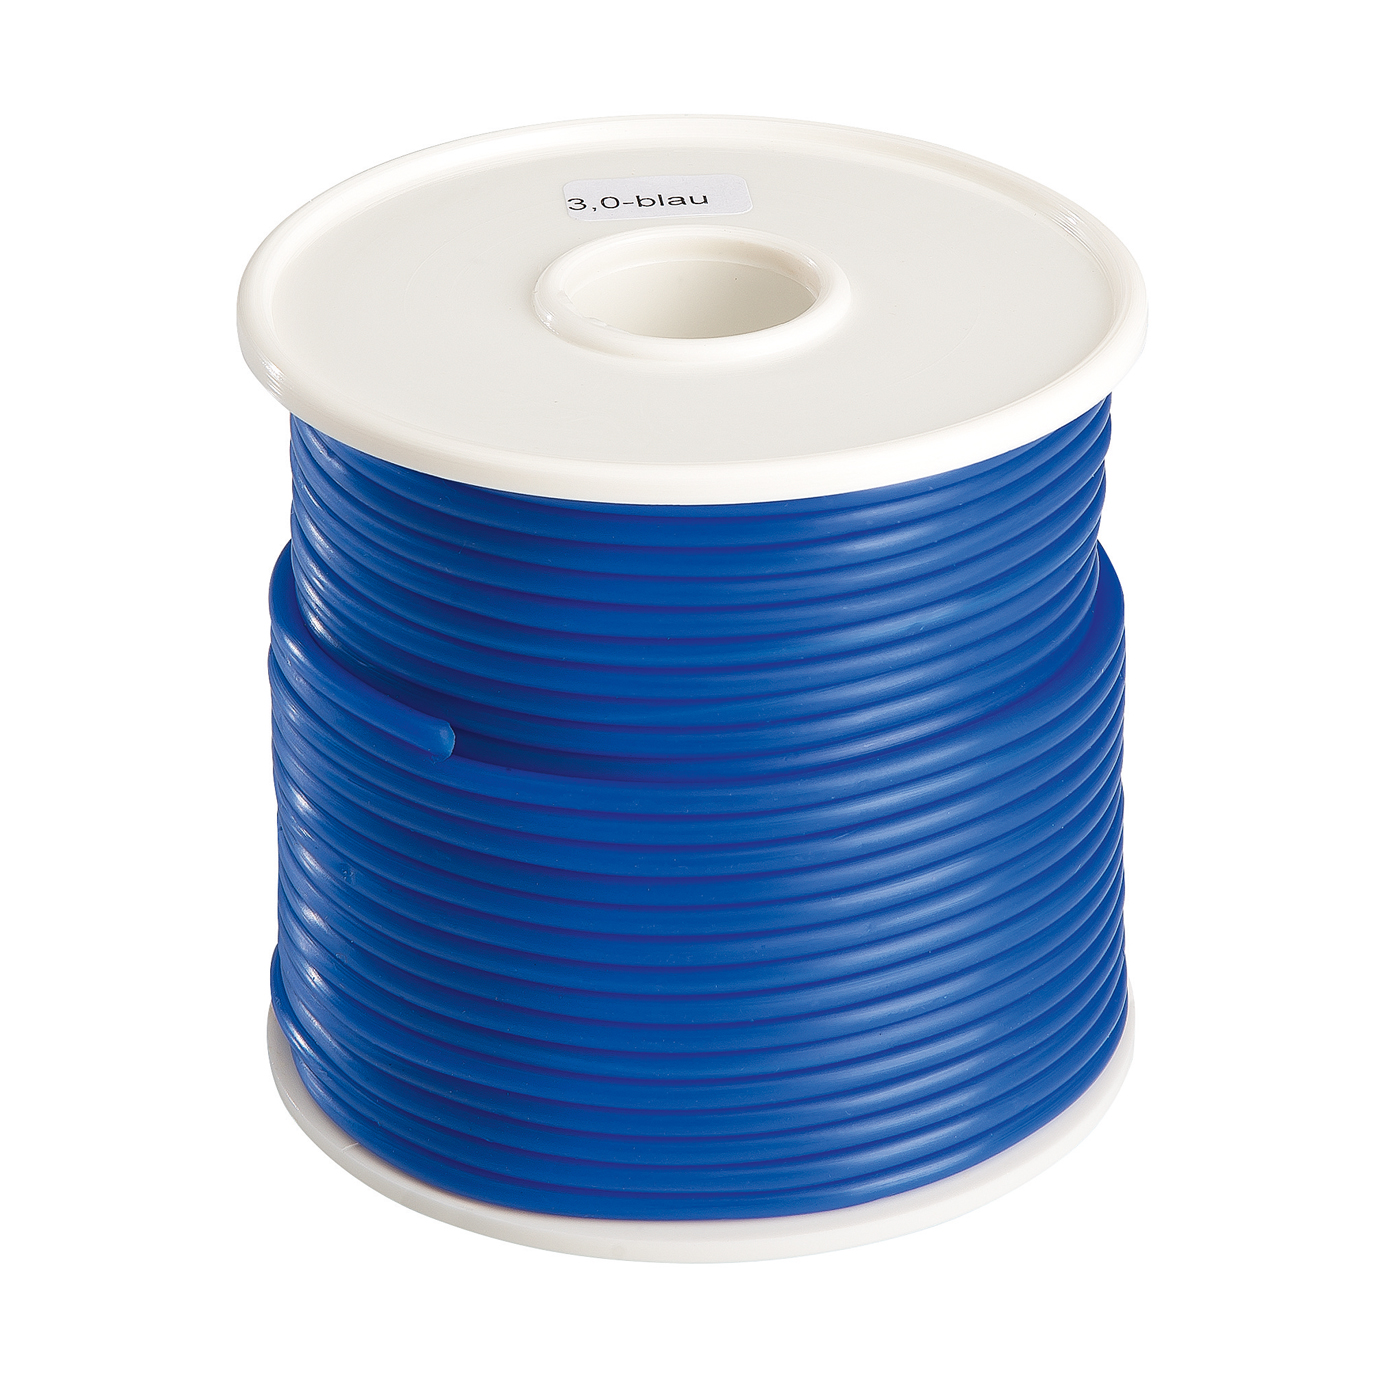 FINOHIT Wax Wire, ø 3.0 mm, Medium Hard, Blue - 250 g